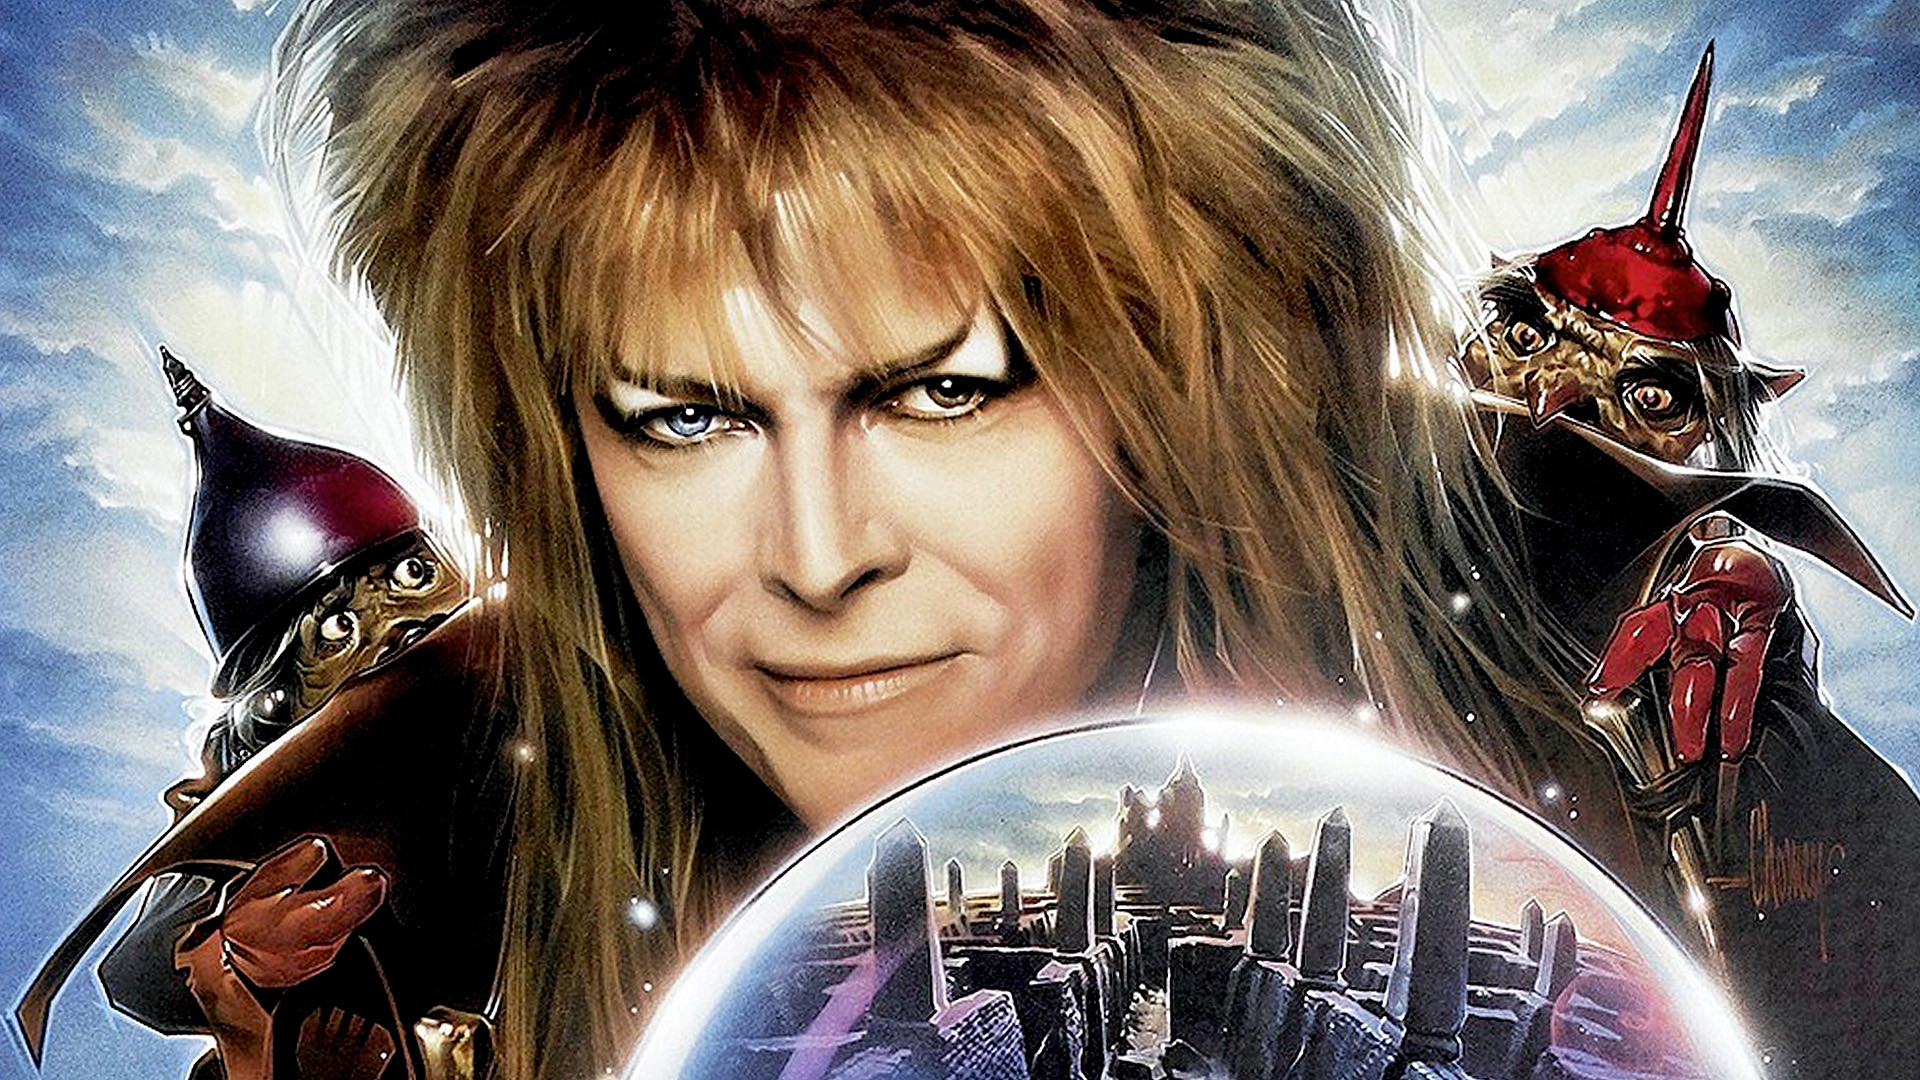 De alien a rei dos duendes: 7 papéis de David Bowie no cinema